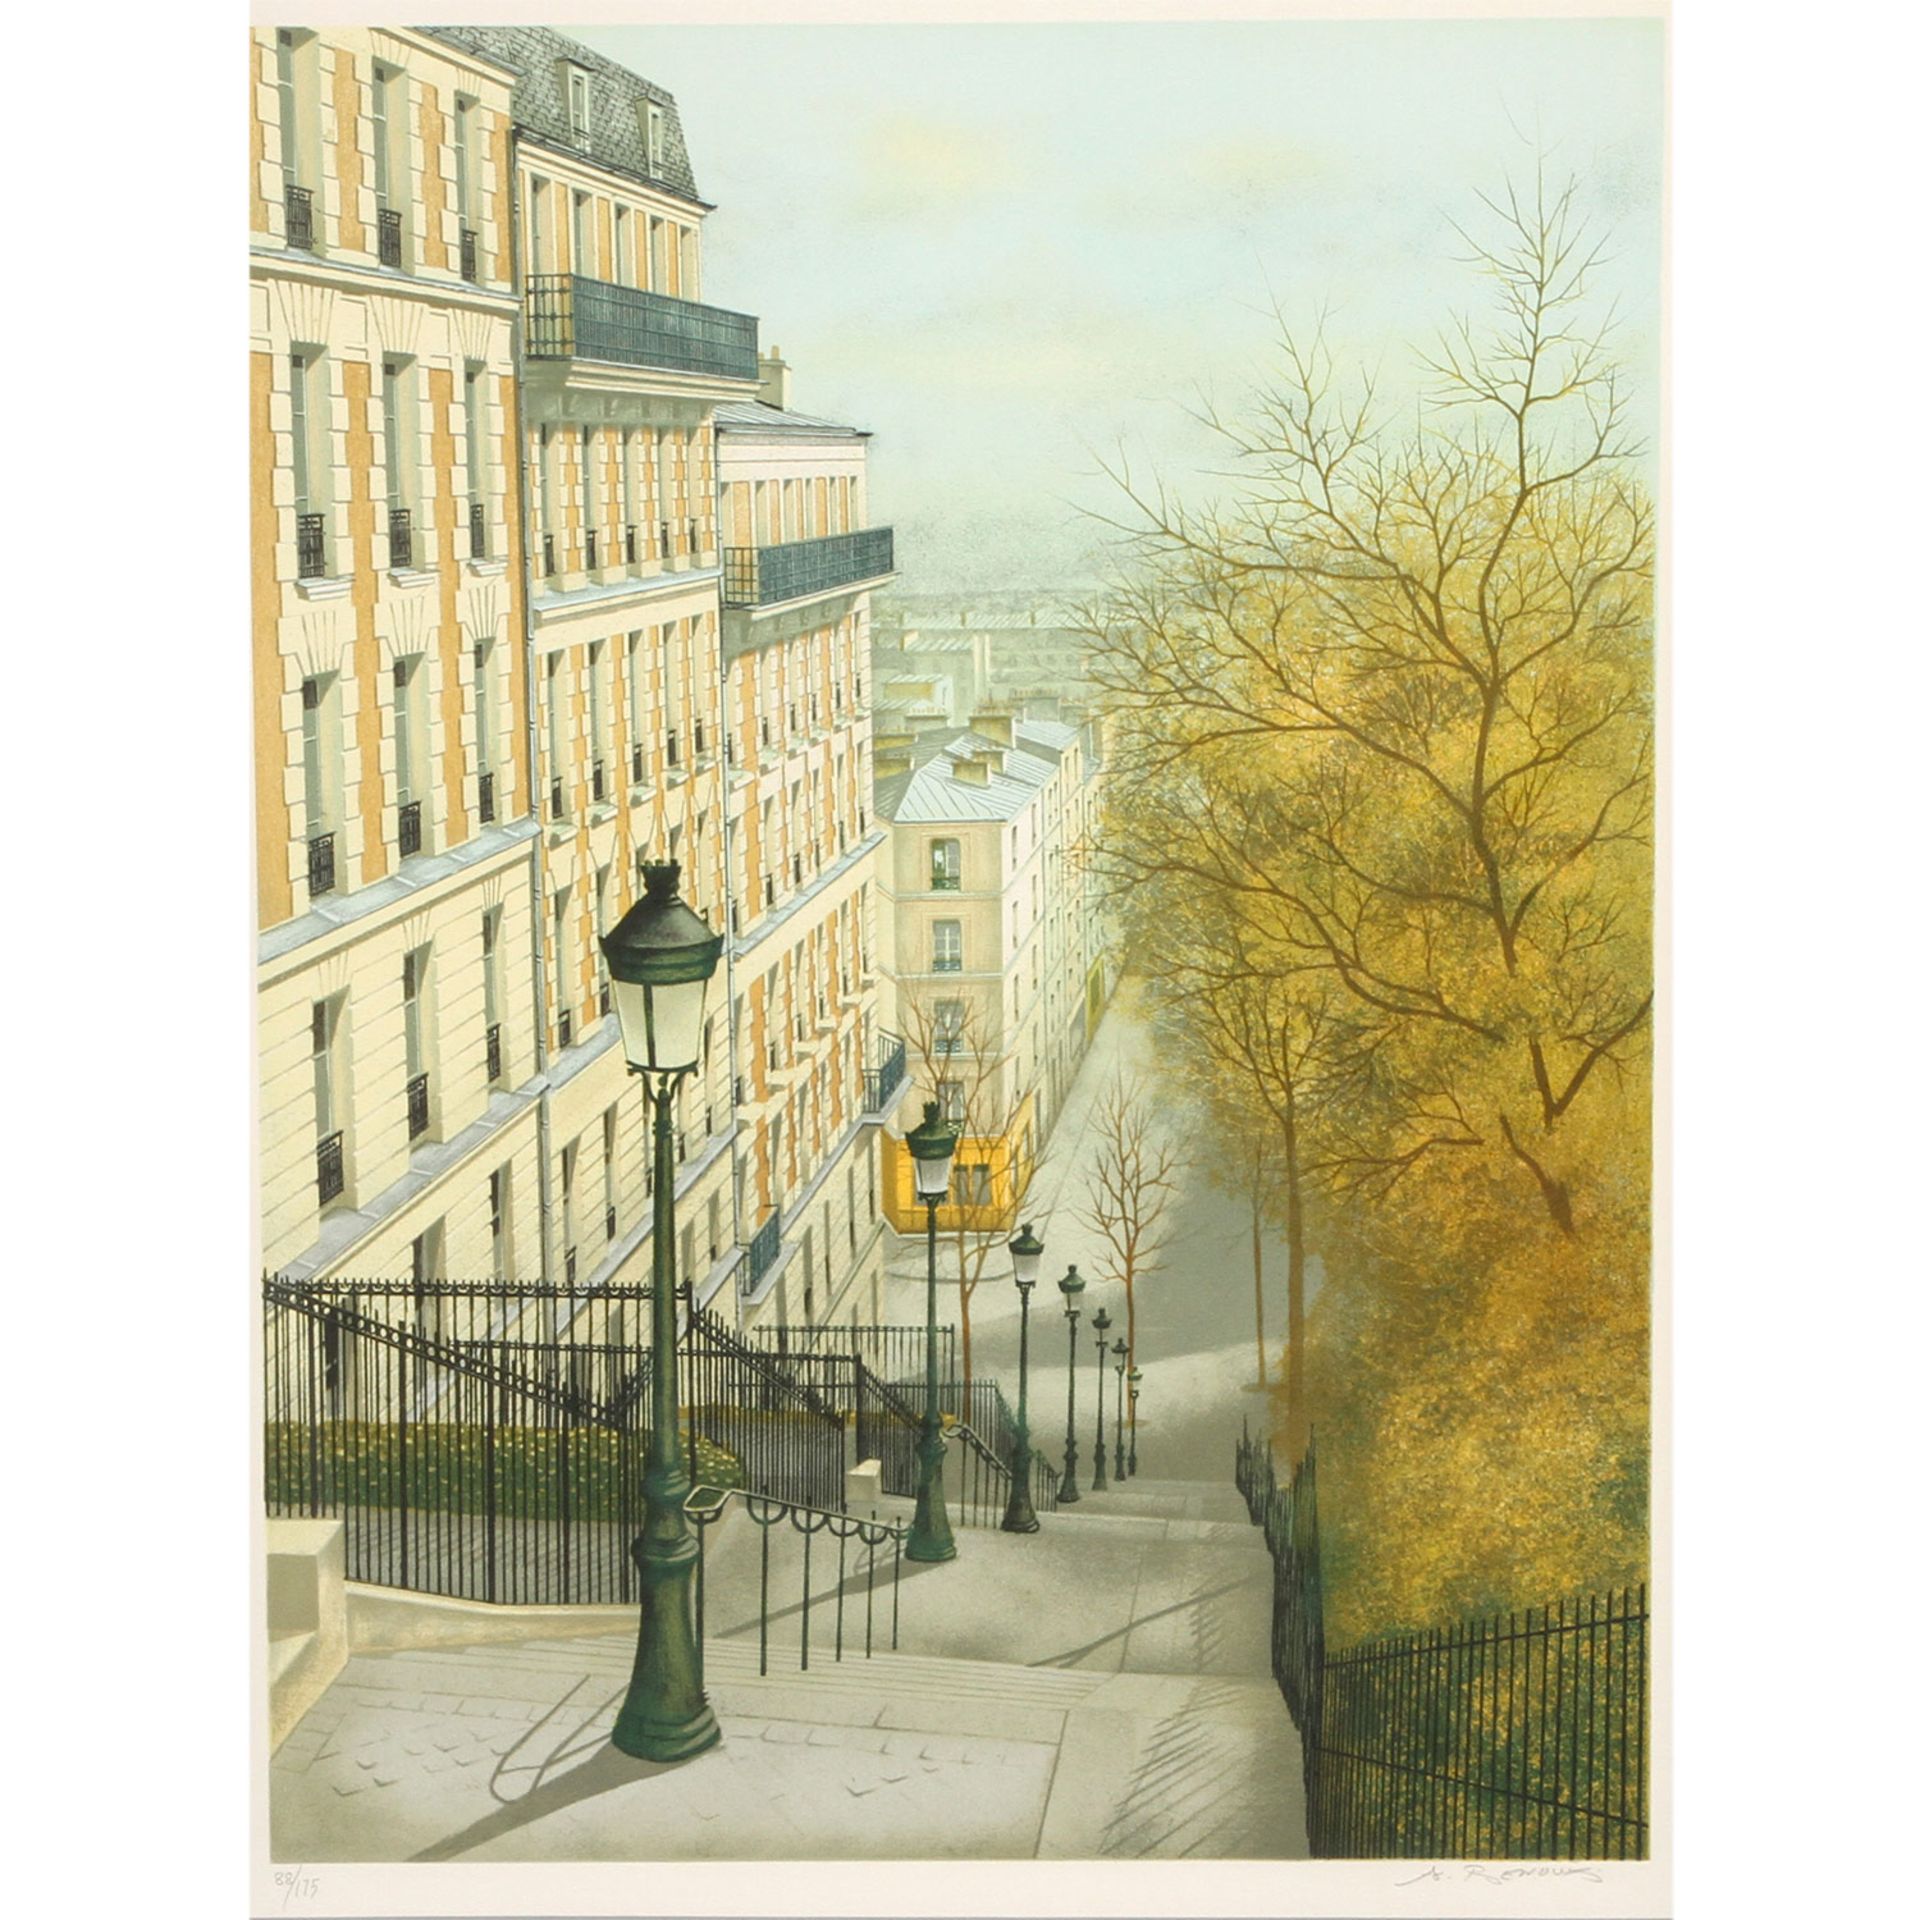 RENOUX, ANDRÉ (Oran 1939-2002 Paris, französ. Künstler), "Paris, die Rue Maurice Utrillo im